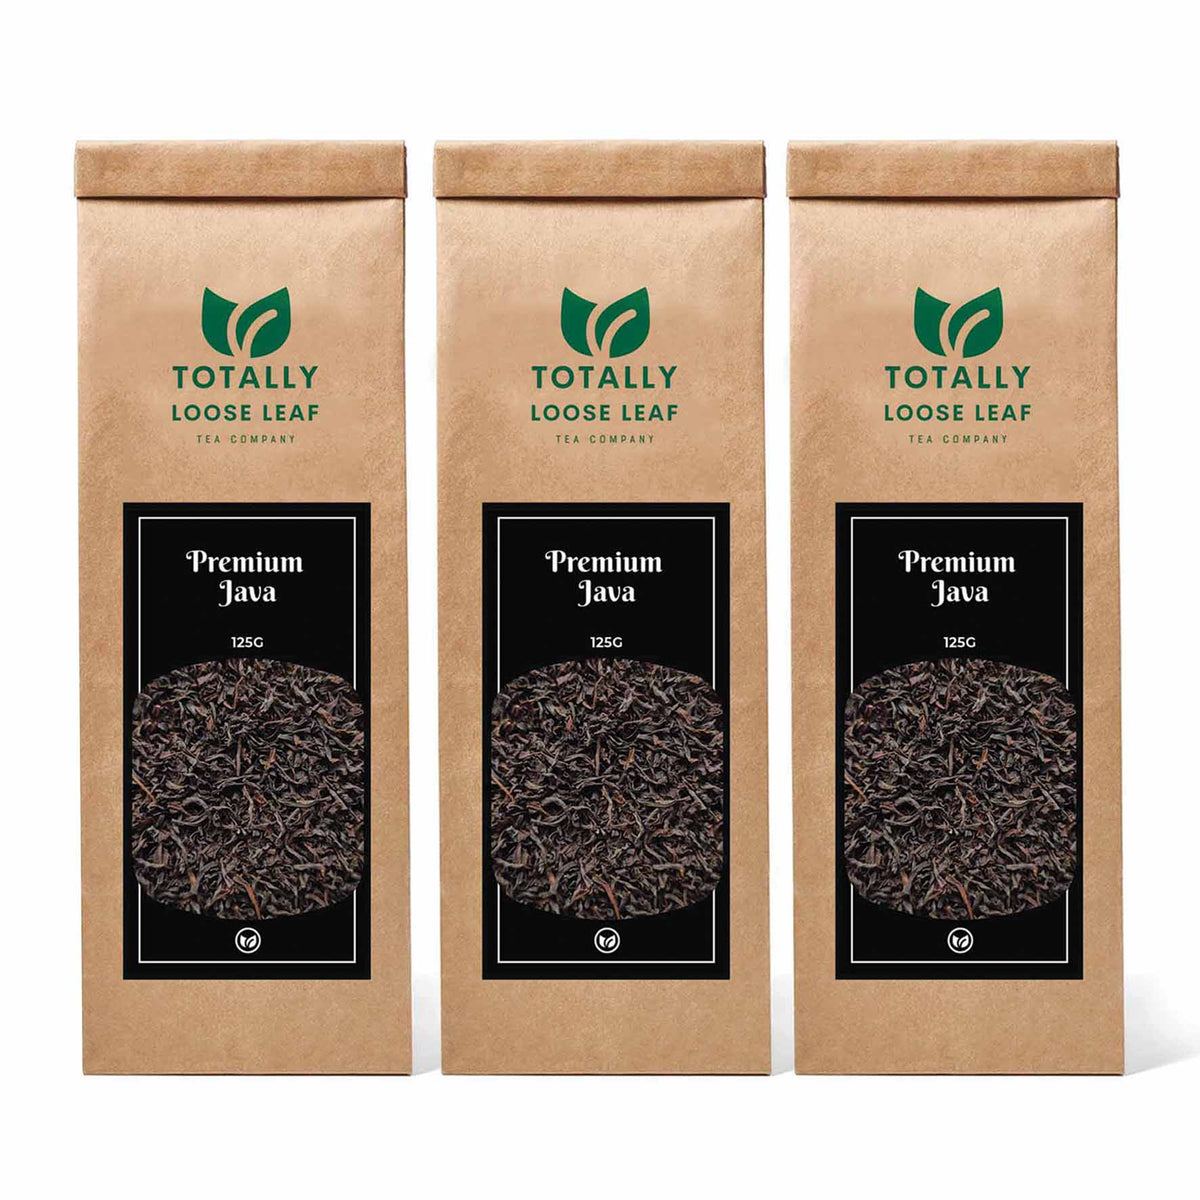 Premium Java Black Estate Loose Leaf Tea - three pouches